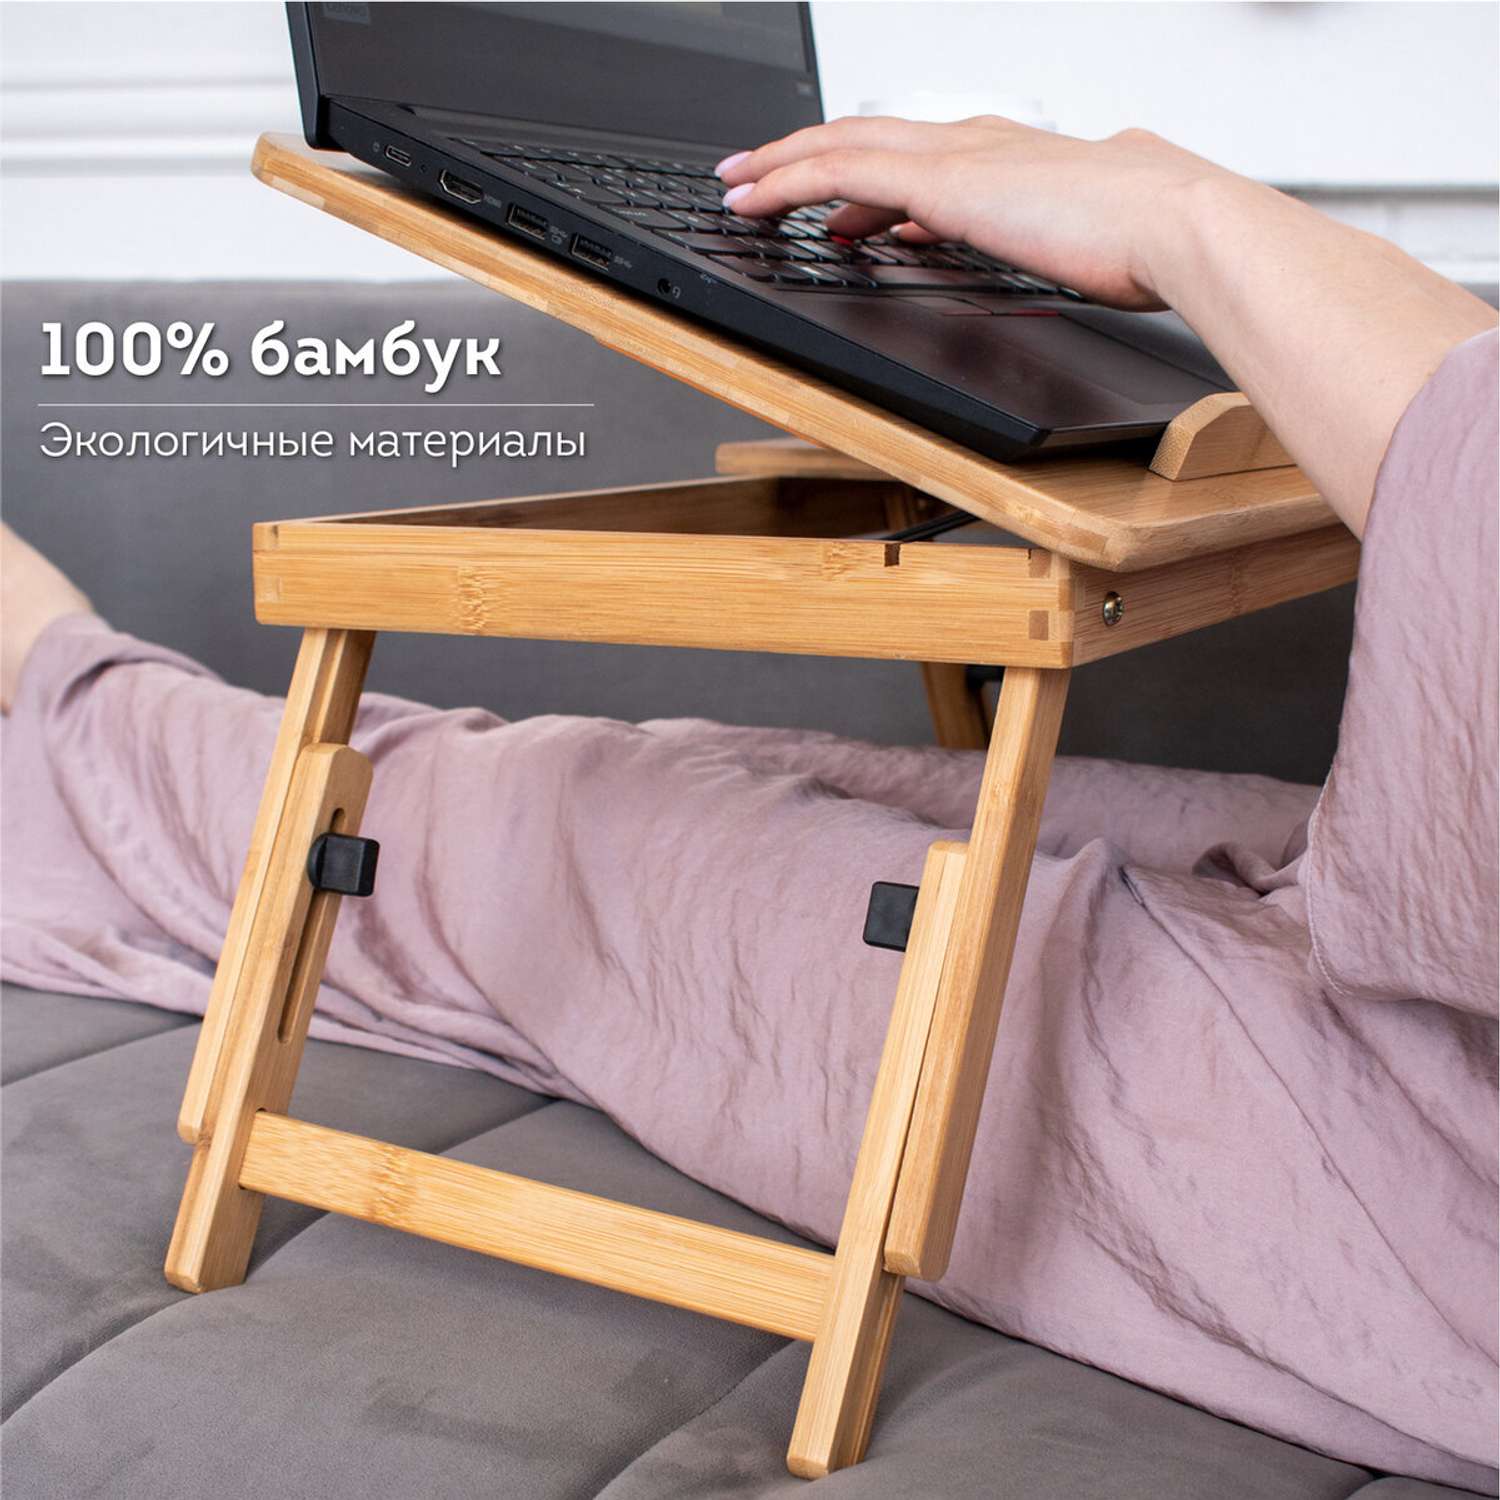 Столик складной для ноутбука DASWERK в кровать для завтрака деревянный 50х30х25 см с охлаждением - фото 5